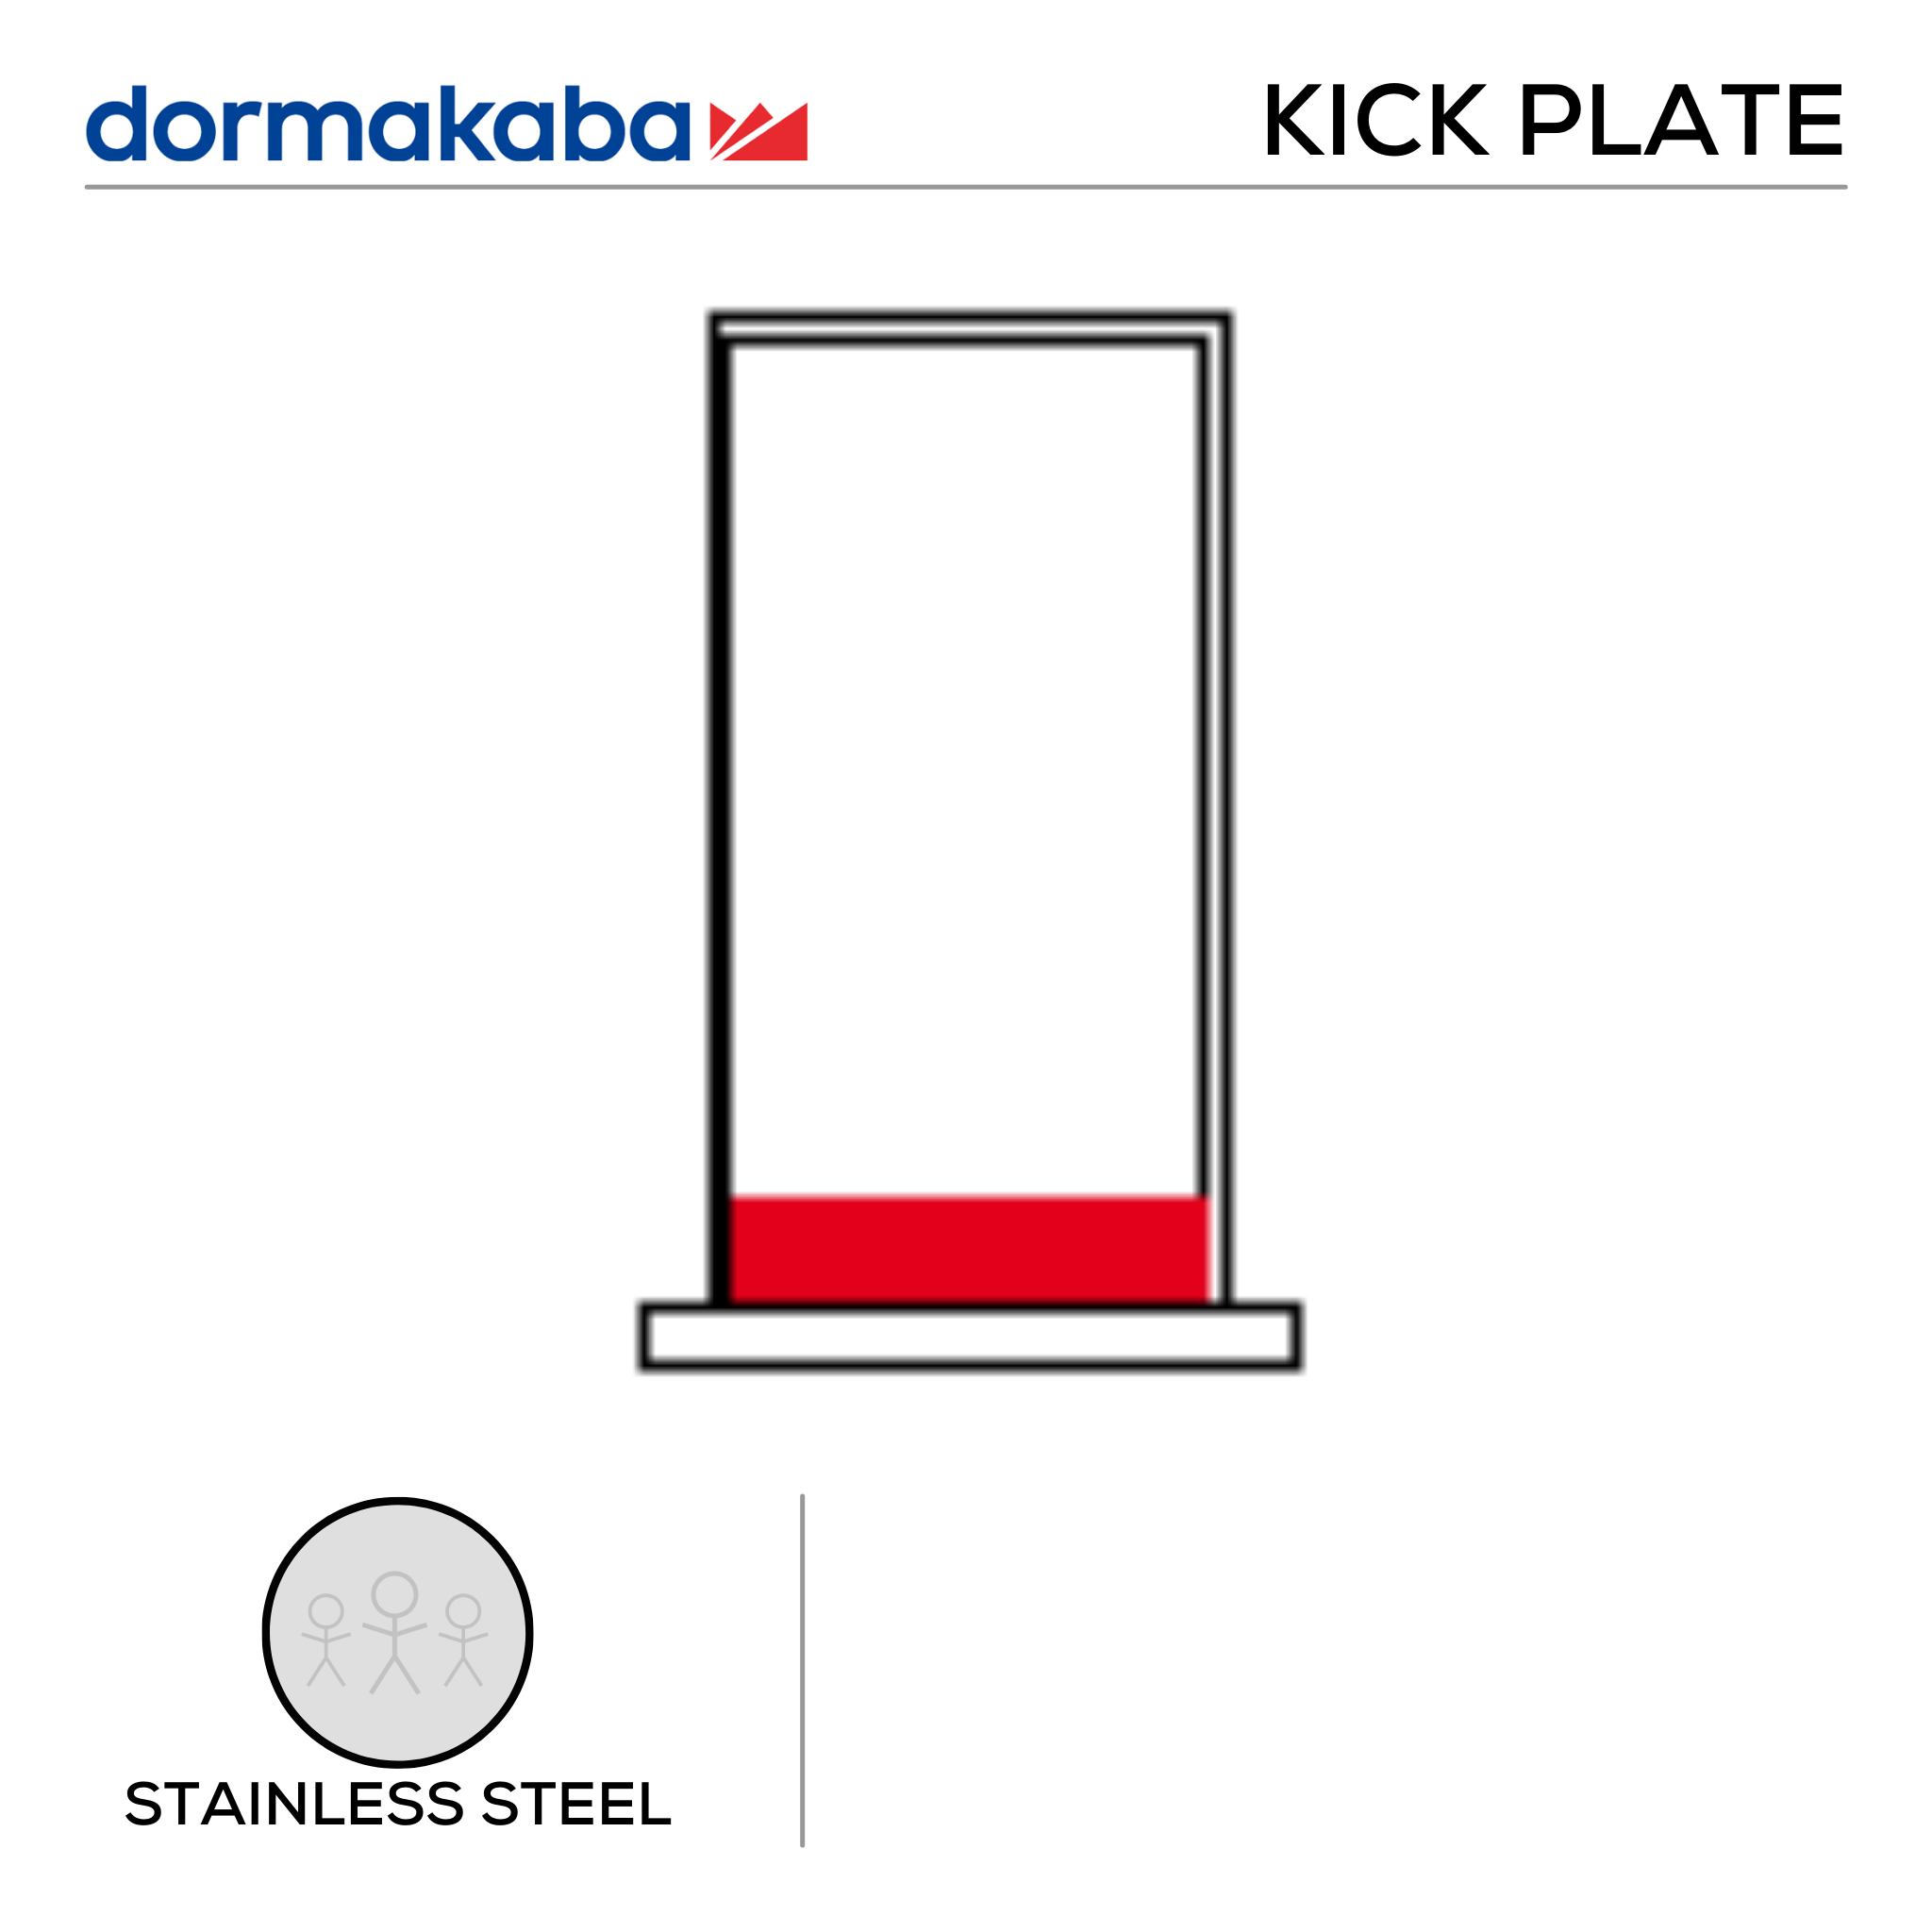 DKP-SS-200, Door Width Kick Plate, Door Width, 200mm (w) x 1.2mm (t), Right, Stainless Steel, Dormakaba